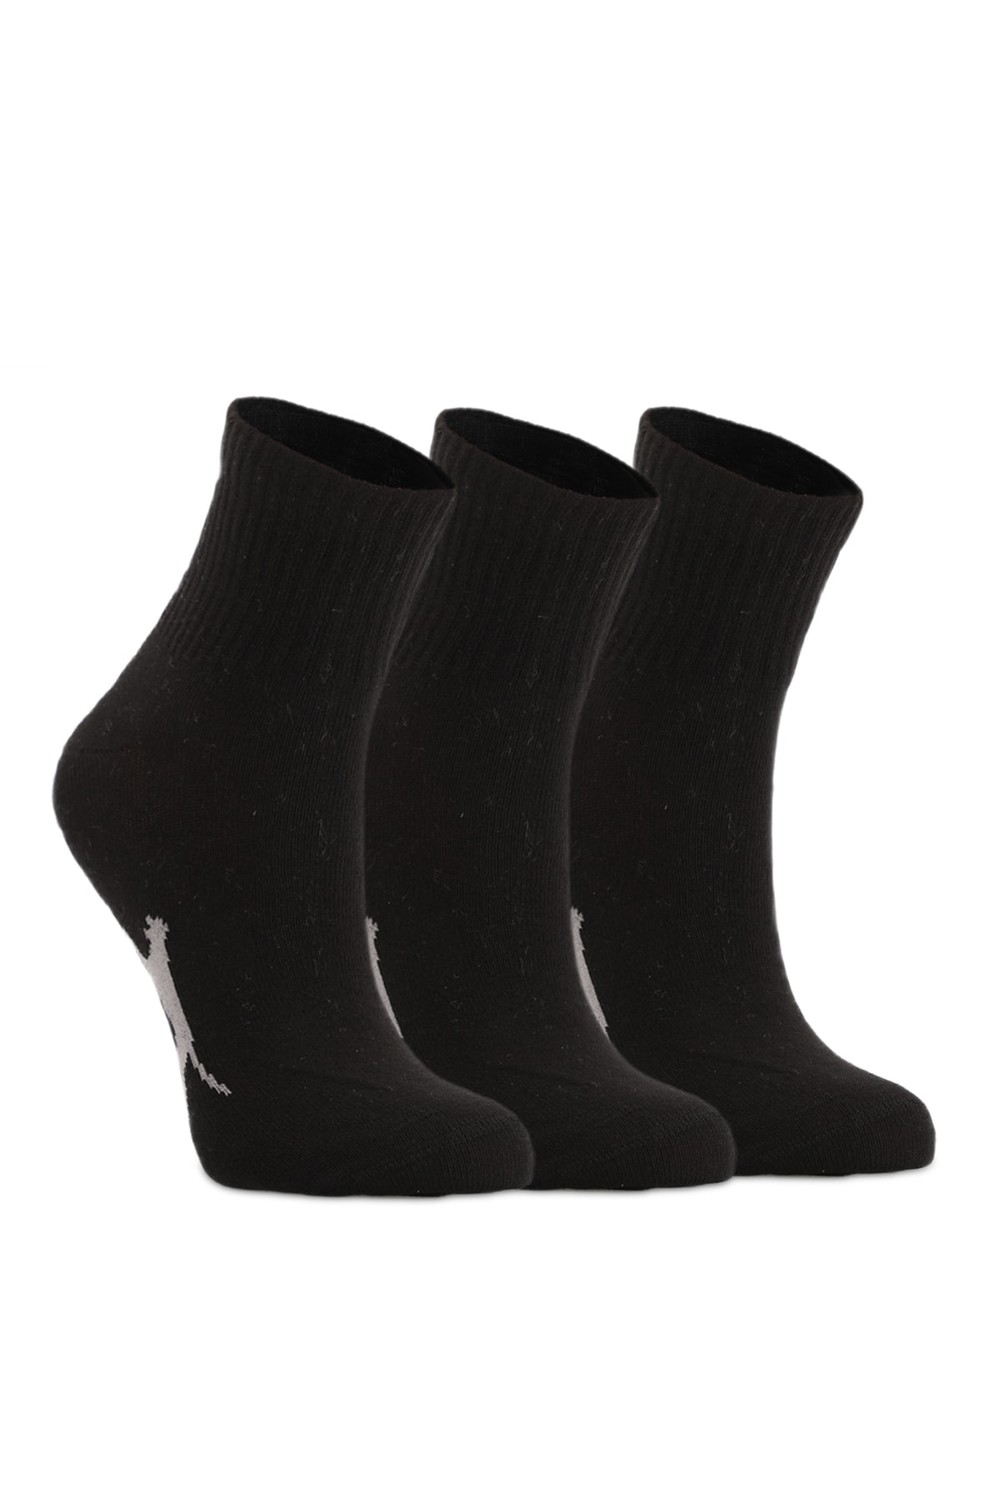 Slazenger Socks - Black